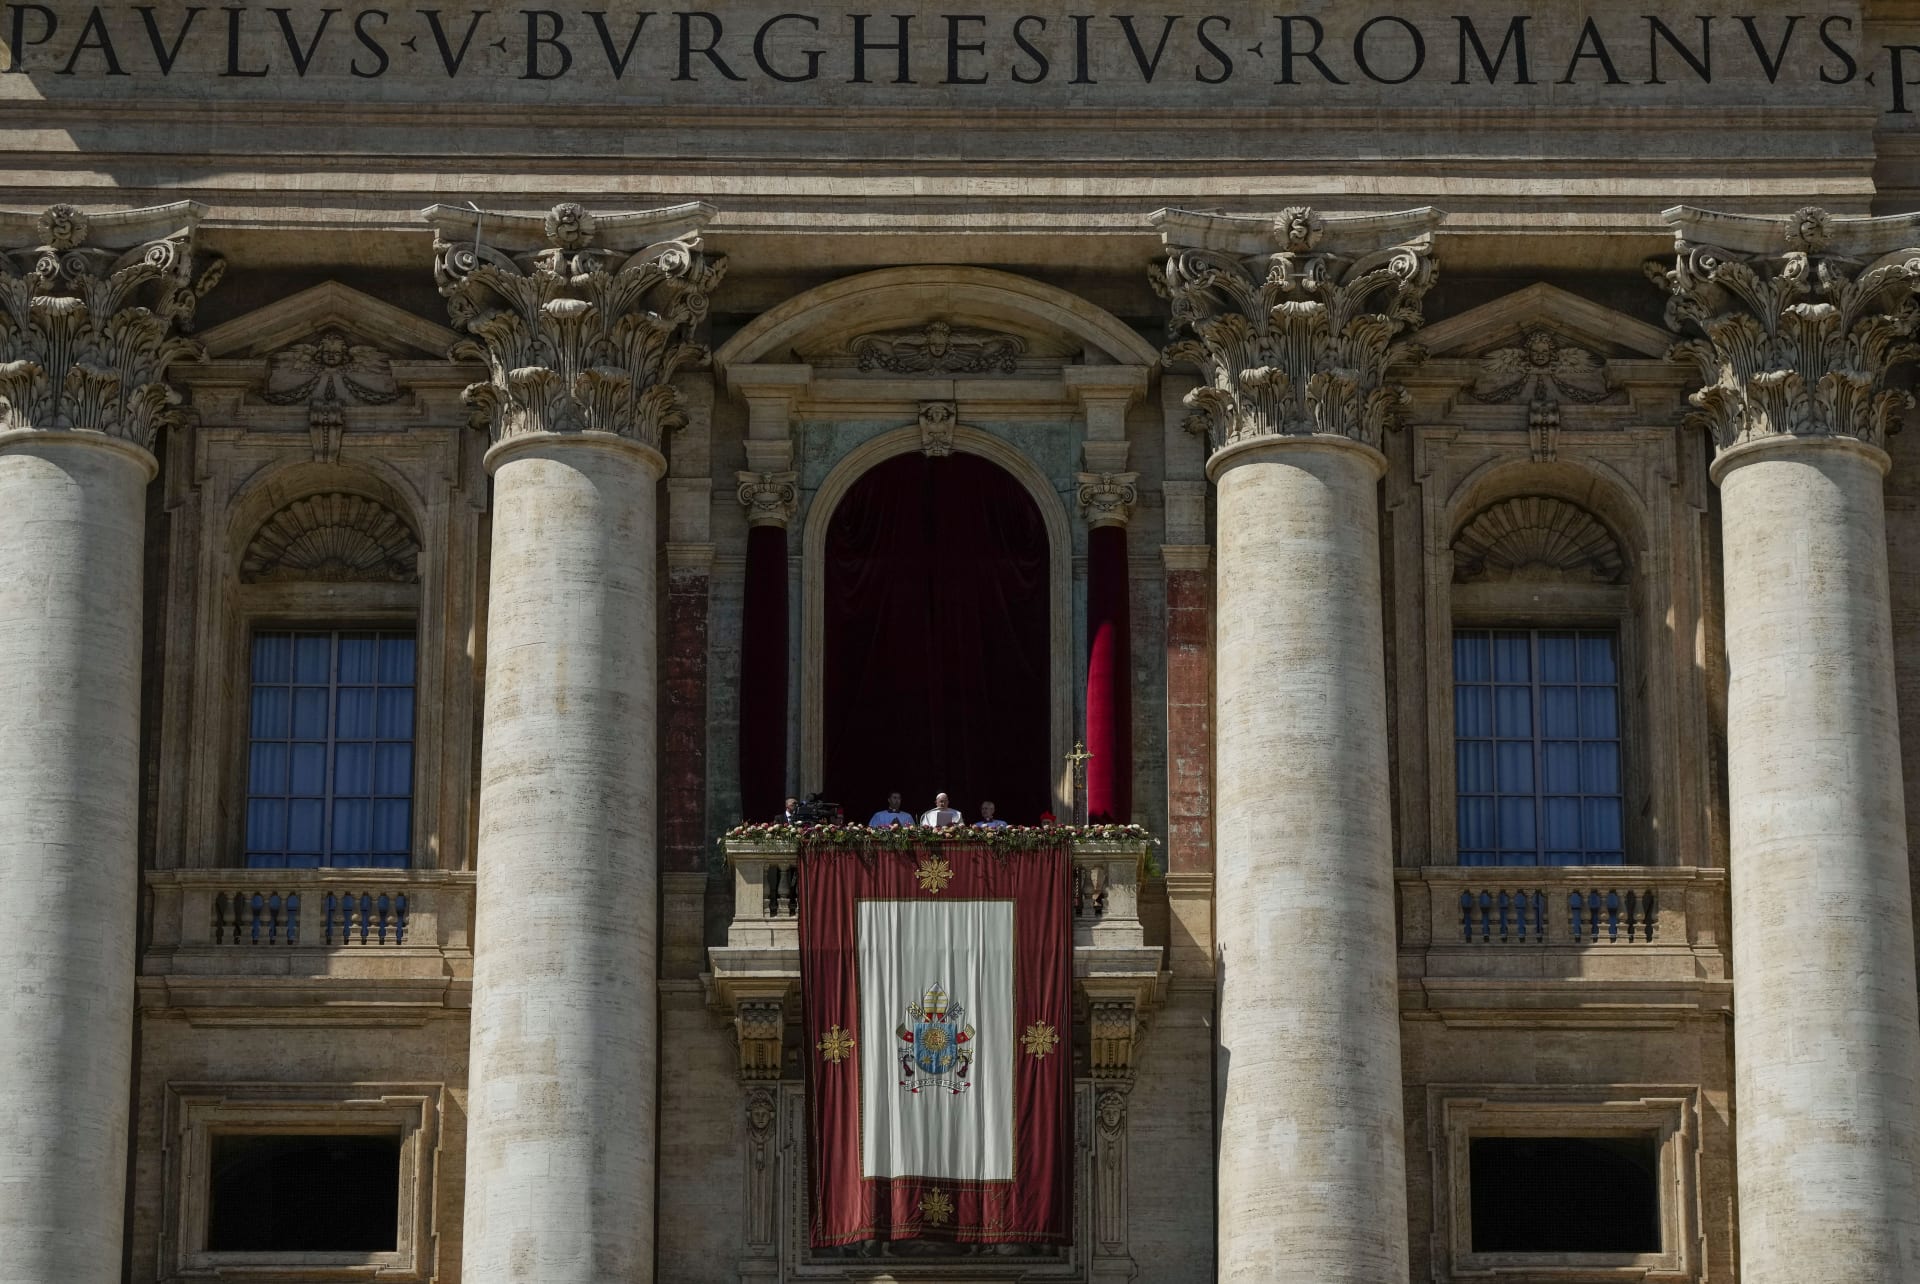 Papež František v neděli dopoledne předsedal bohoslužbě na Svatopetrském náměstí, které se ve slunečném ale chladném počasí zúčastnilo podle vatikánské policie na 45 tisíc lidí. Po mši pak žehnal věřícím za jízdy po náměstí ve speciálním voze – papamobilu. 